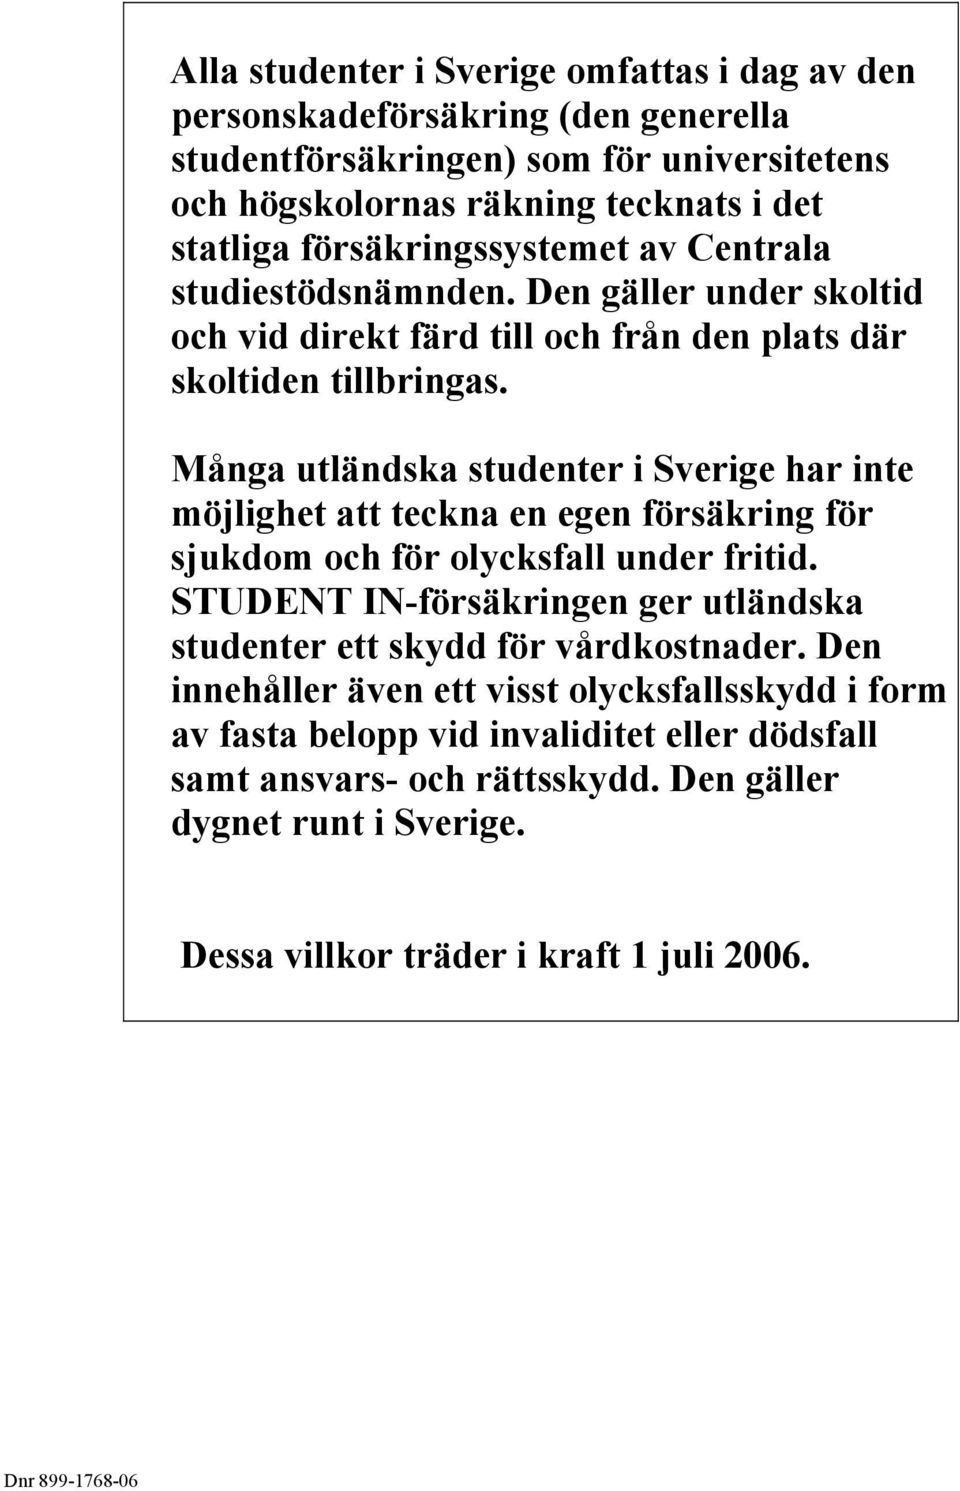 Många utländska studenter i Sverige har inte möjlighet att teckna en egen försäkring för sjukdom och för olycksfall under fritid.